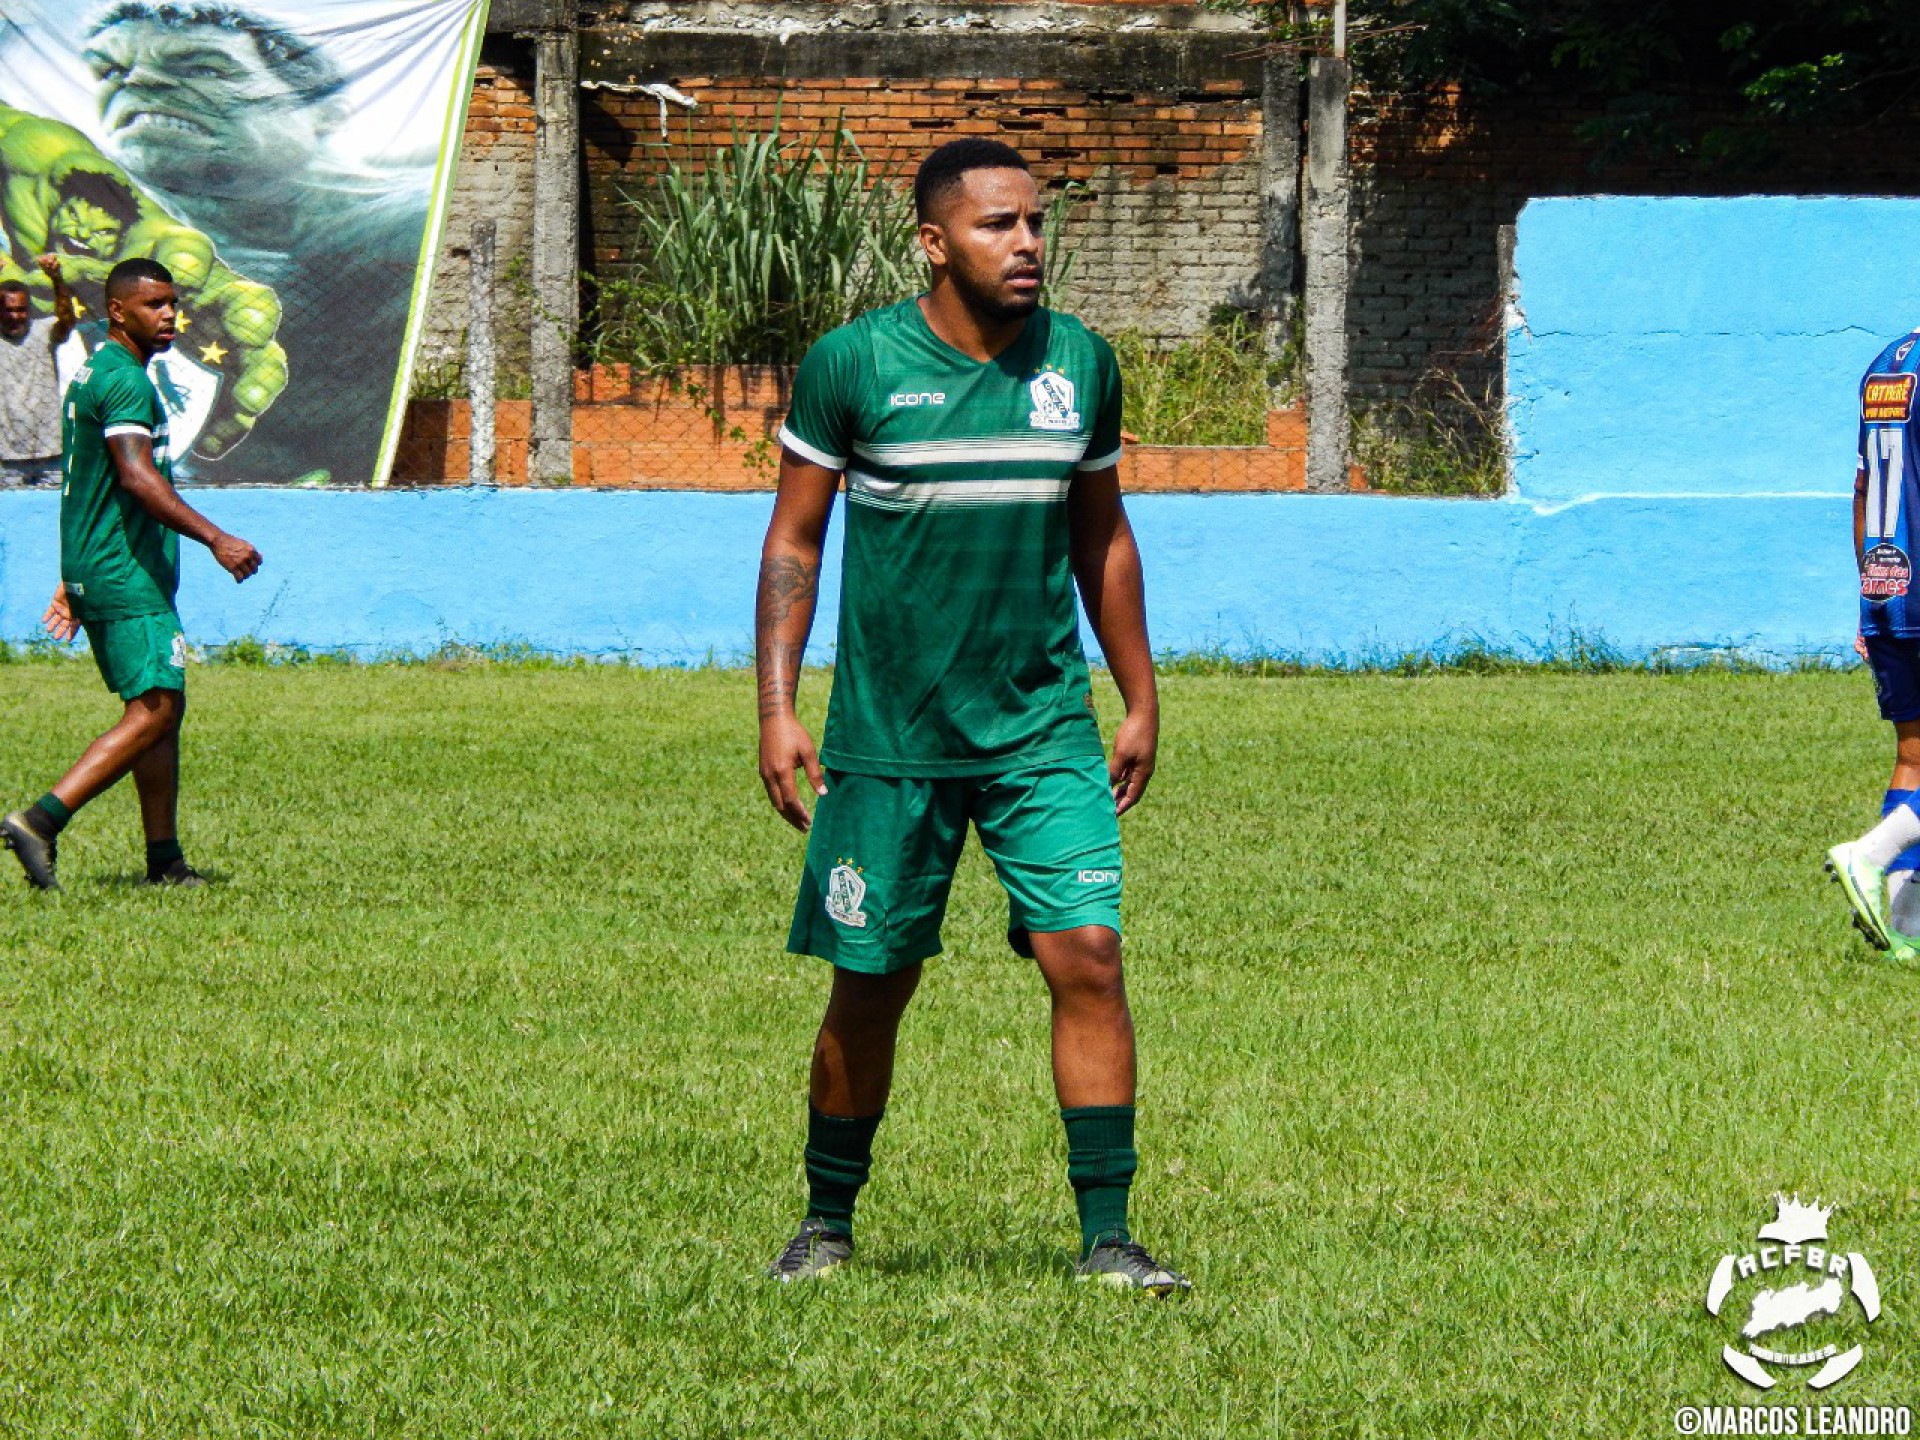 O atacante Lucas foi o destaque da rodada inicial marcando dois gols na vitória do S.E Esperança por 3 a 0 - Marcos Leandro / ACFBR